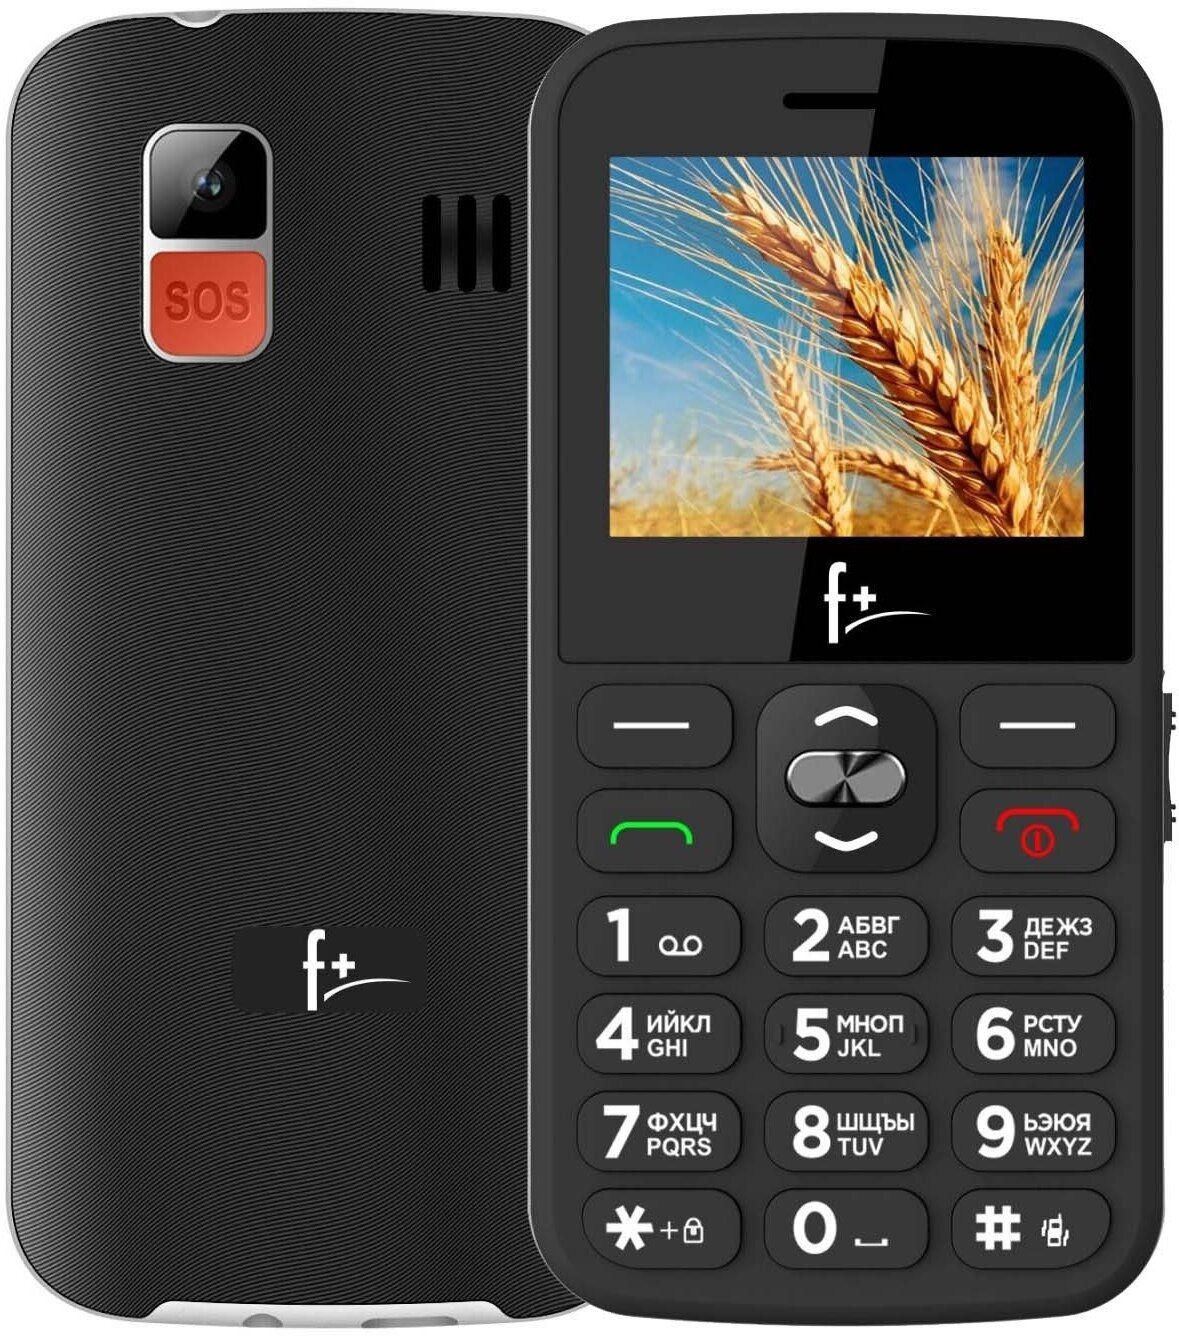 Мобильный телефон F+ Ezzy 5C Black цена и фото